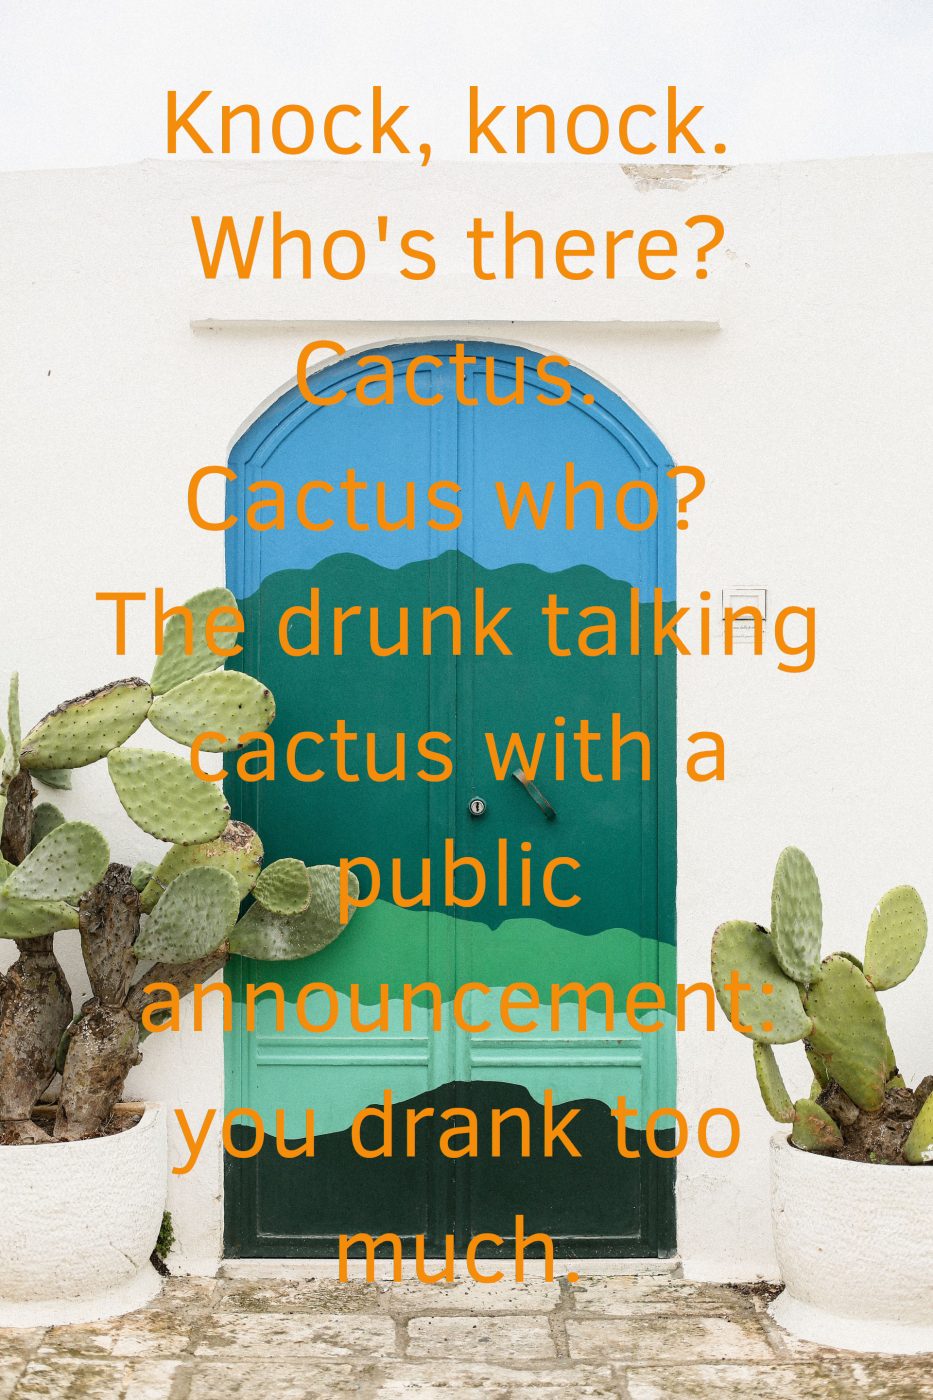 Cactus Knock Knock Joke About Being Drunk